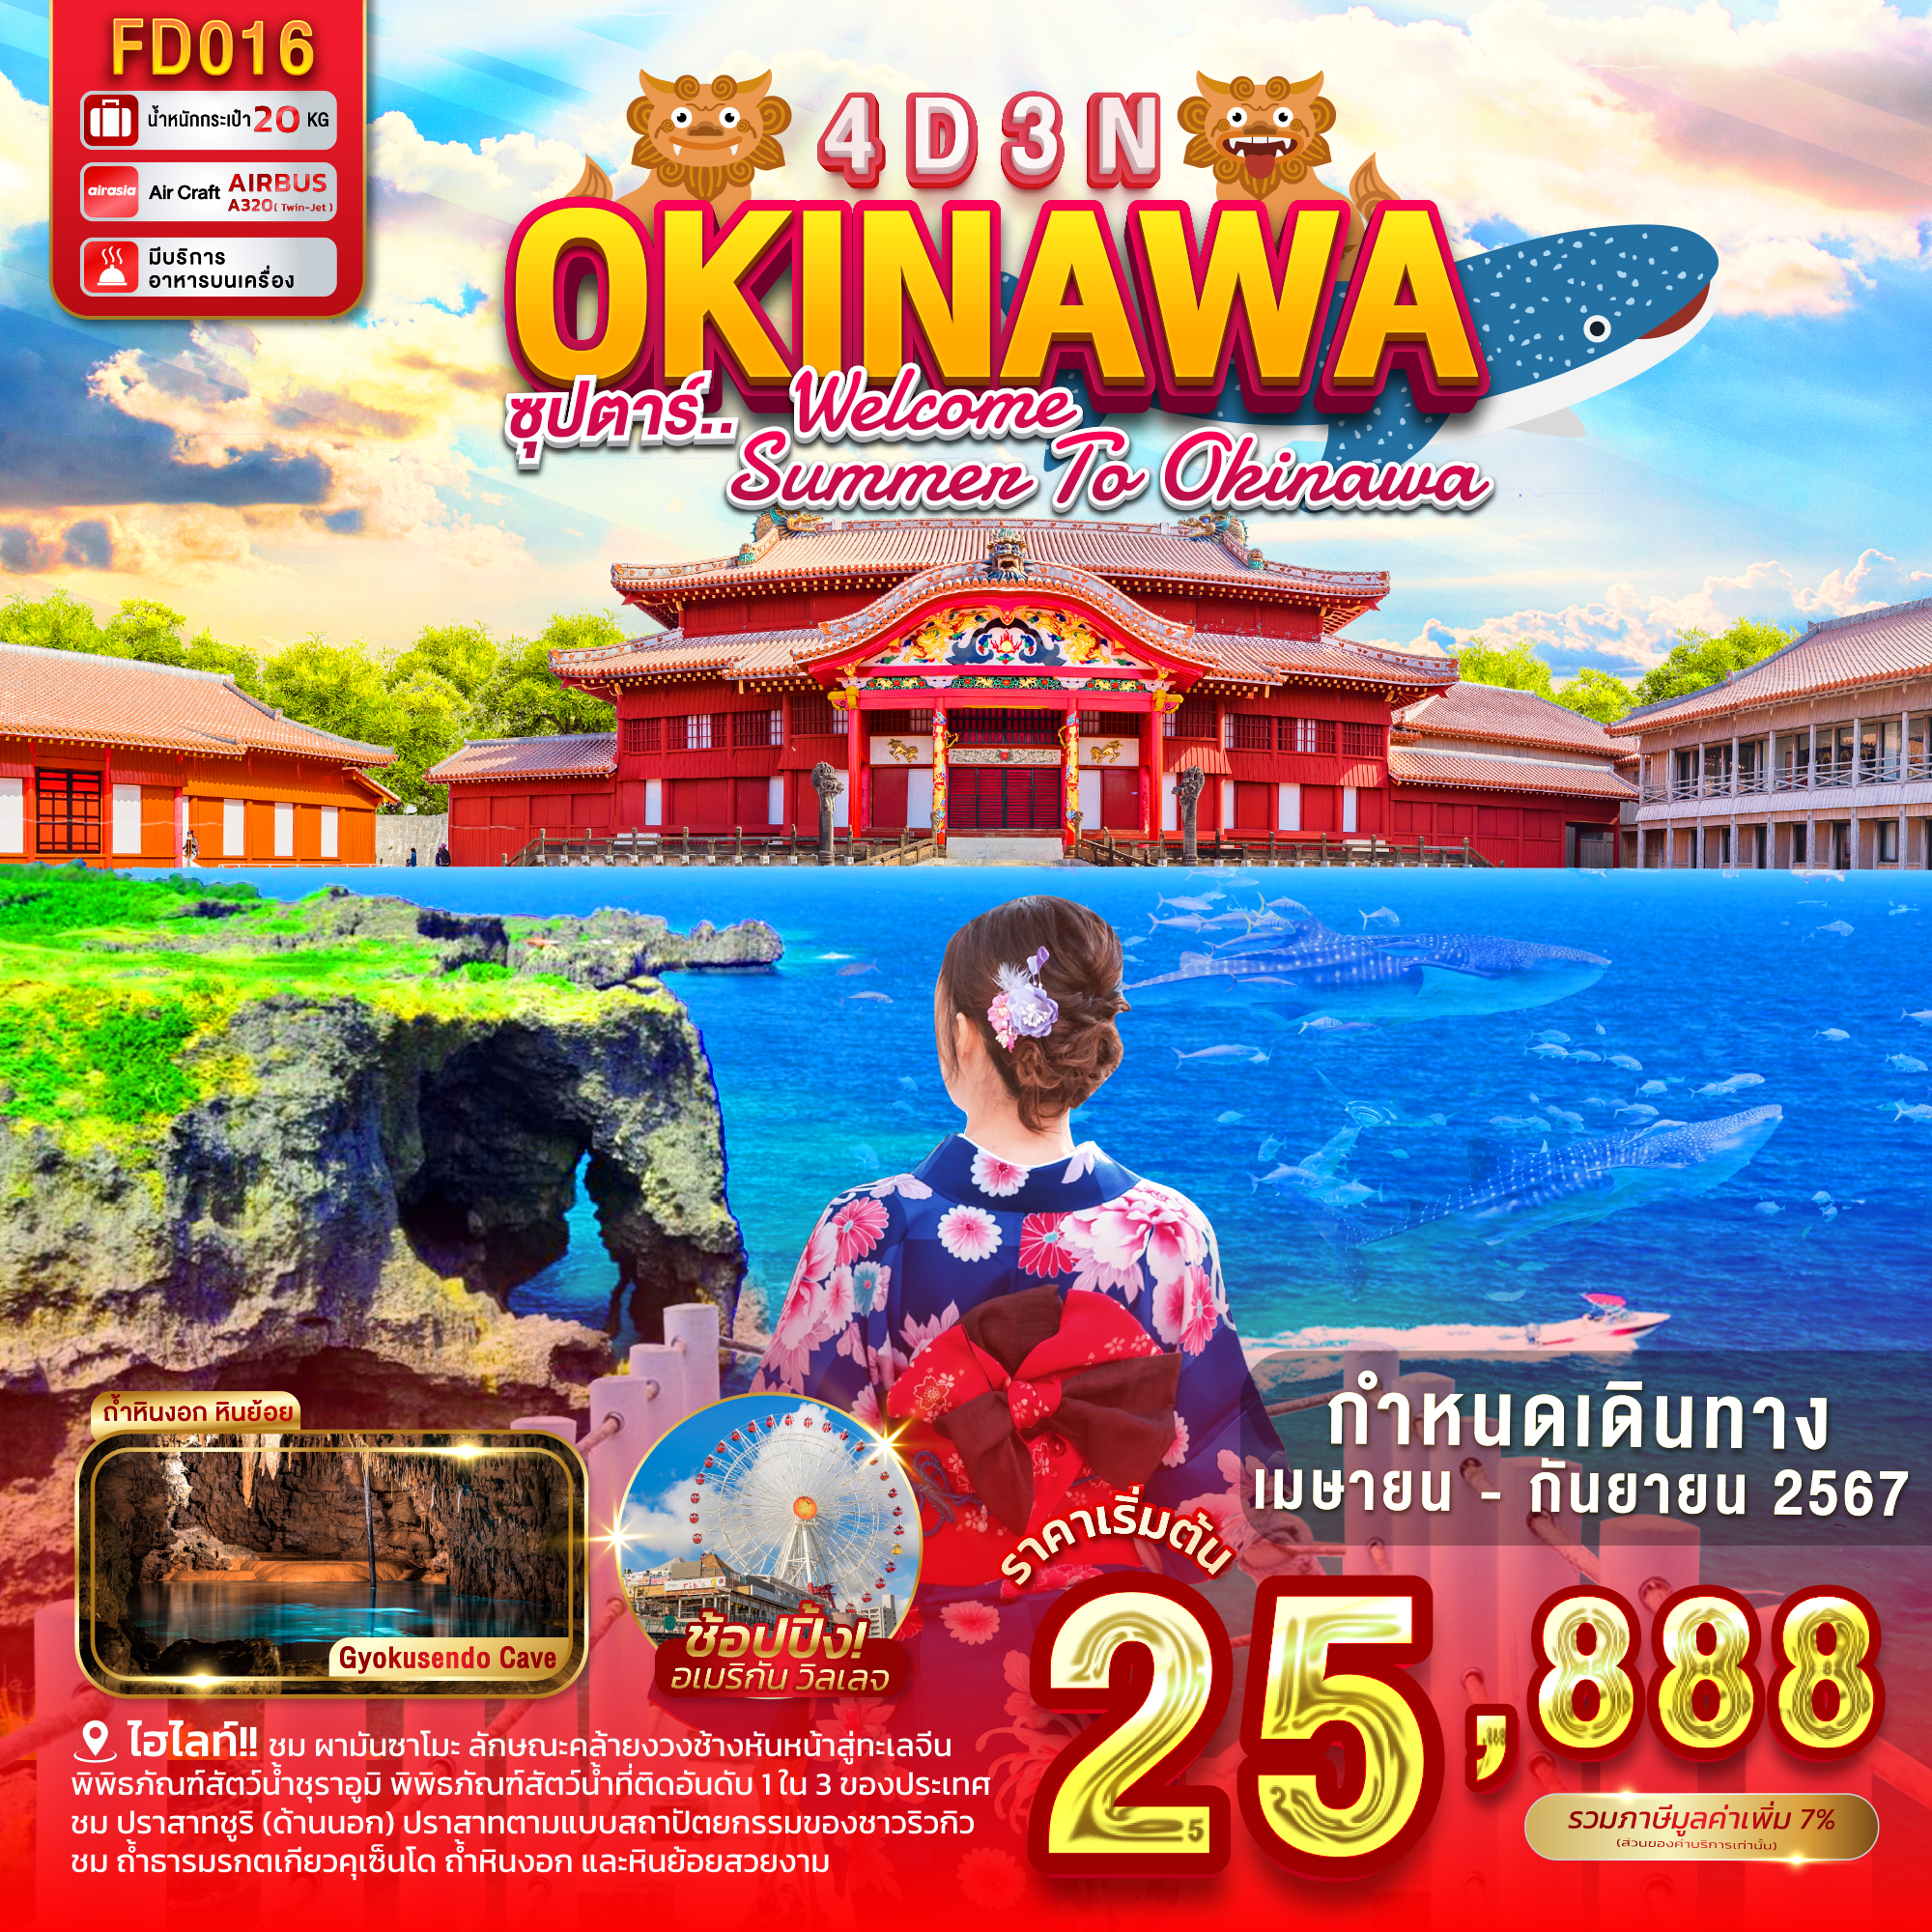 ทัวร์ญี่ปุ่น OKINAWA ซุปตาร์ WELCOME SUMMER TO OKINAWA 4วัน 3คืน FD